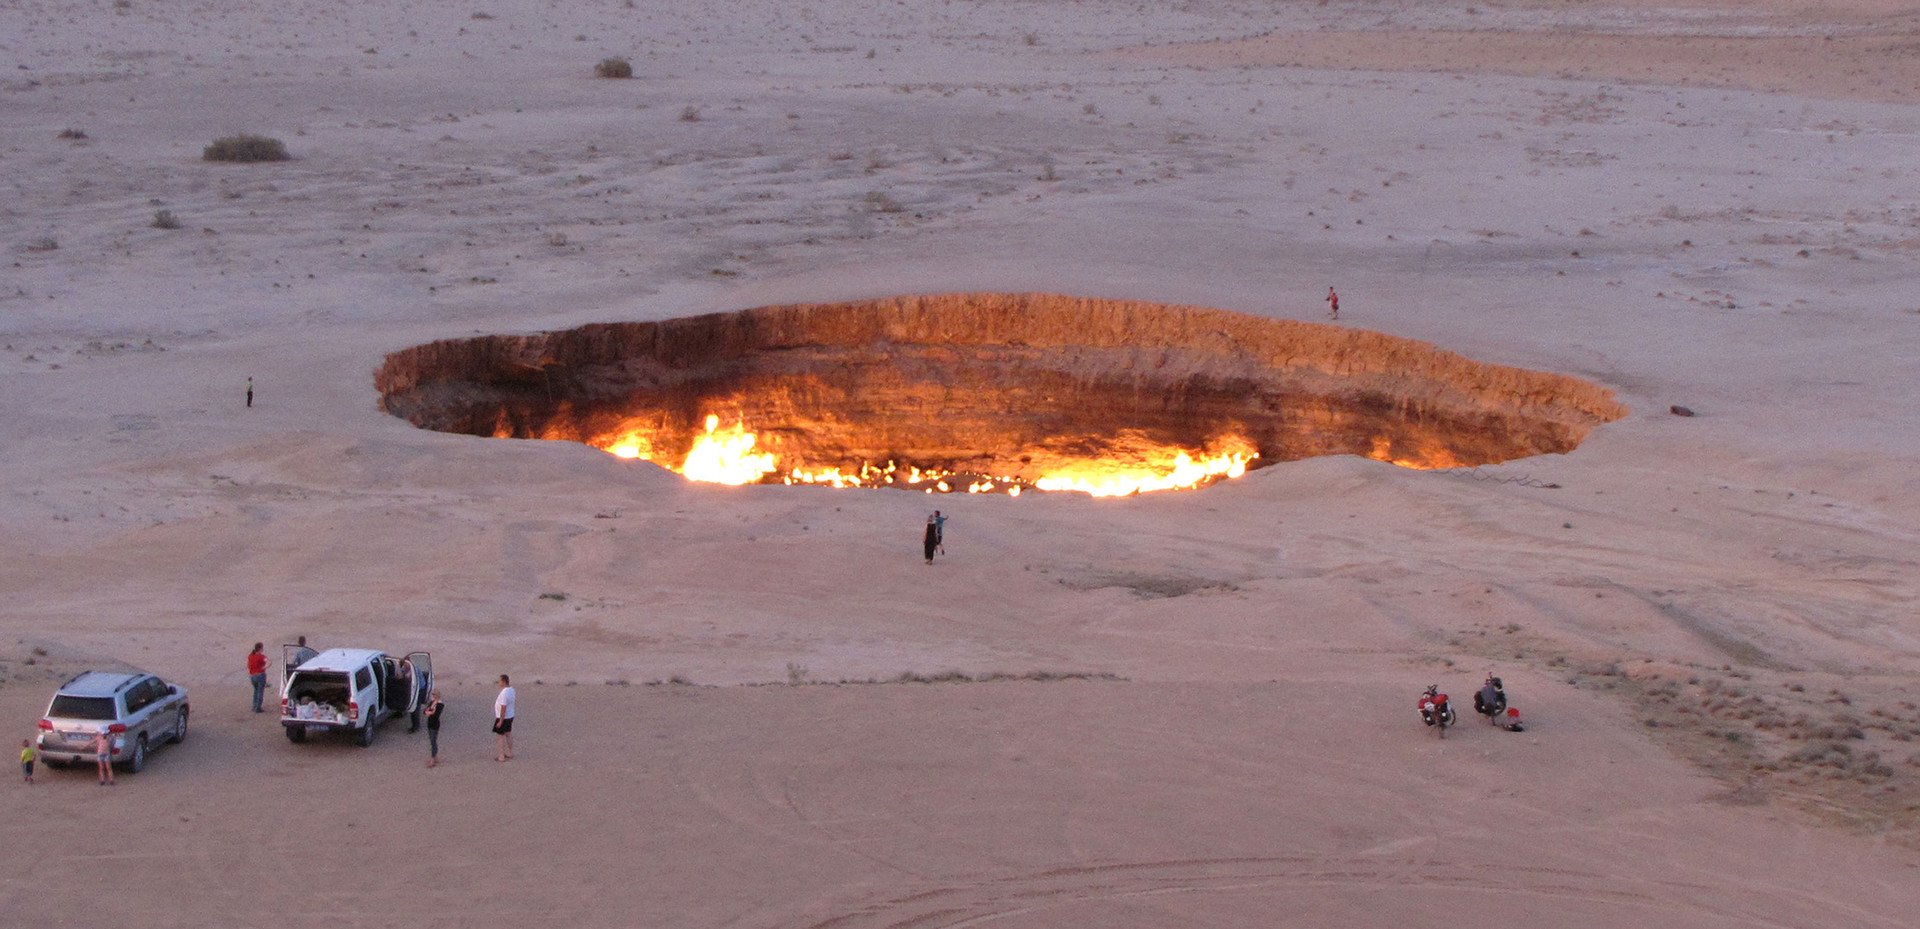  مجموعة زوار حول "بوابة الجحيم"، محرقة الغاز العملاقة في صحراء آرال كاراكوم في تركمانستان، 3 مايو 